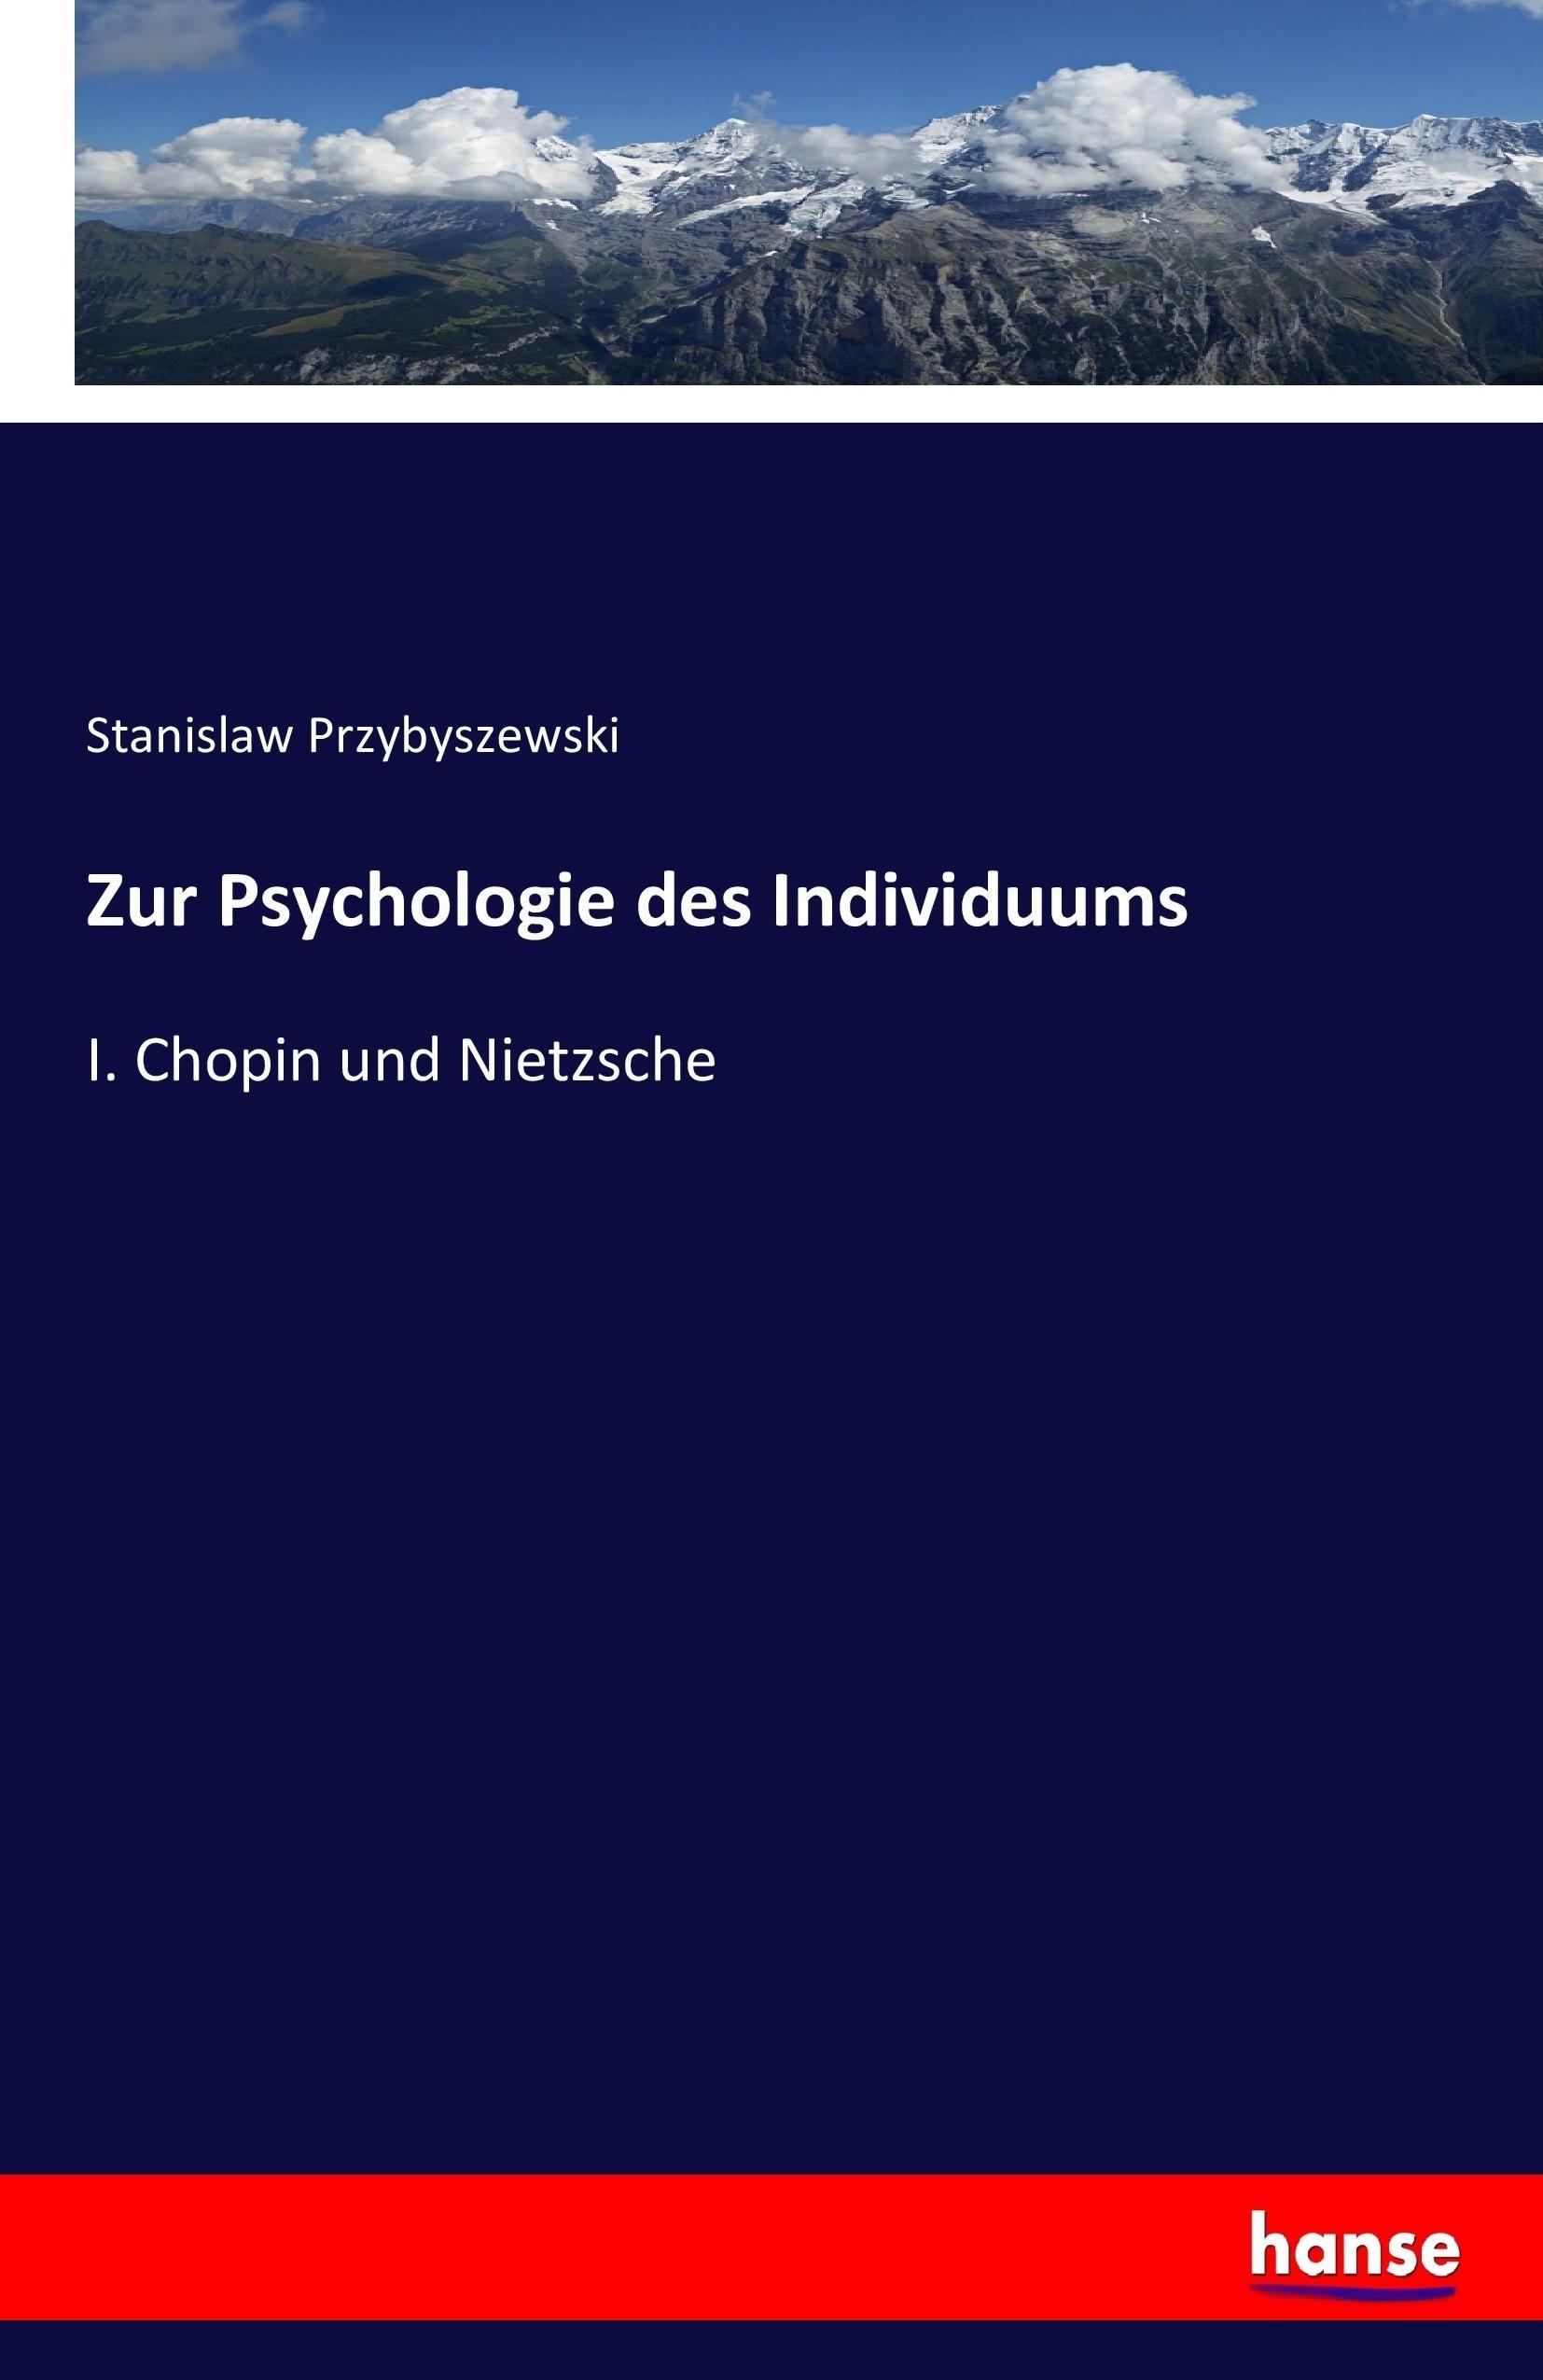 Zur Psychologie des Individuums - Przybyszewski, Stanislaw